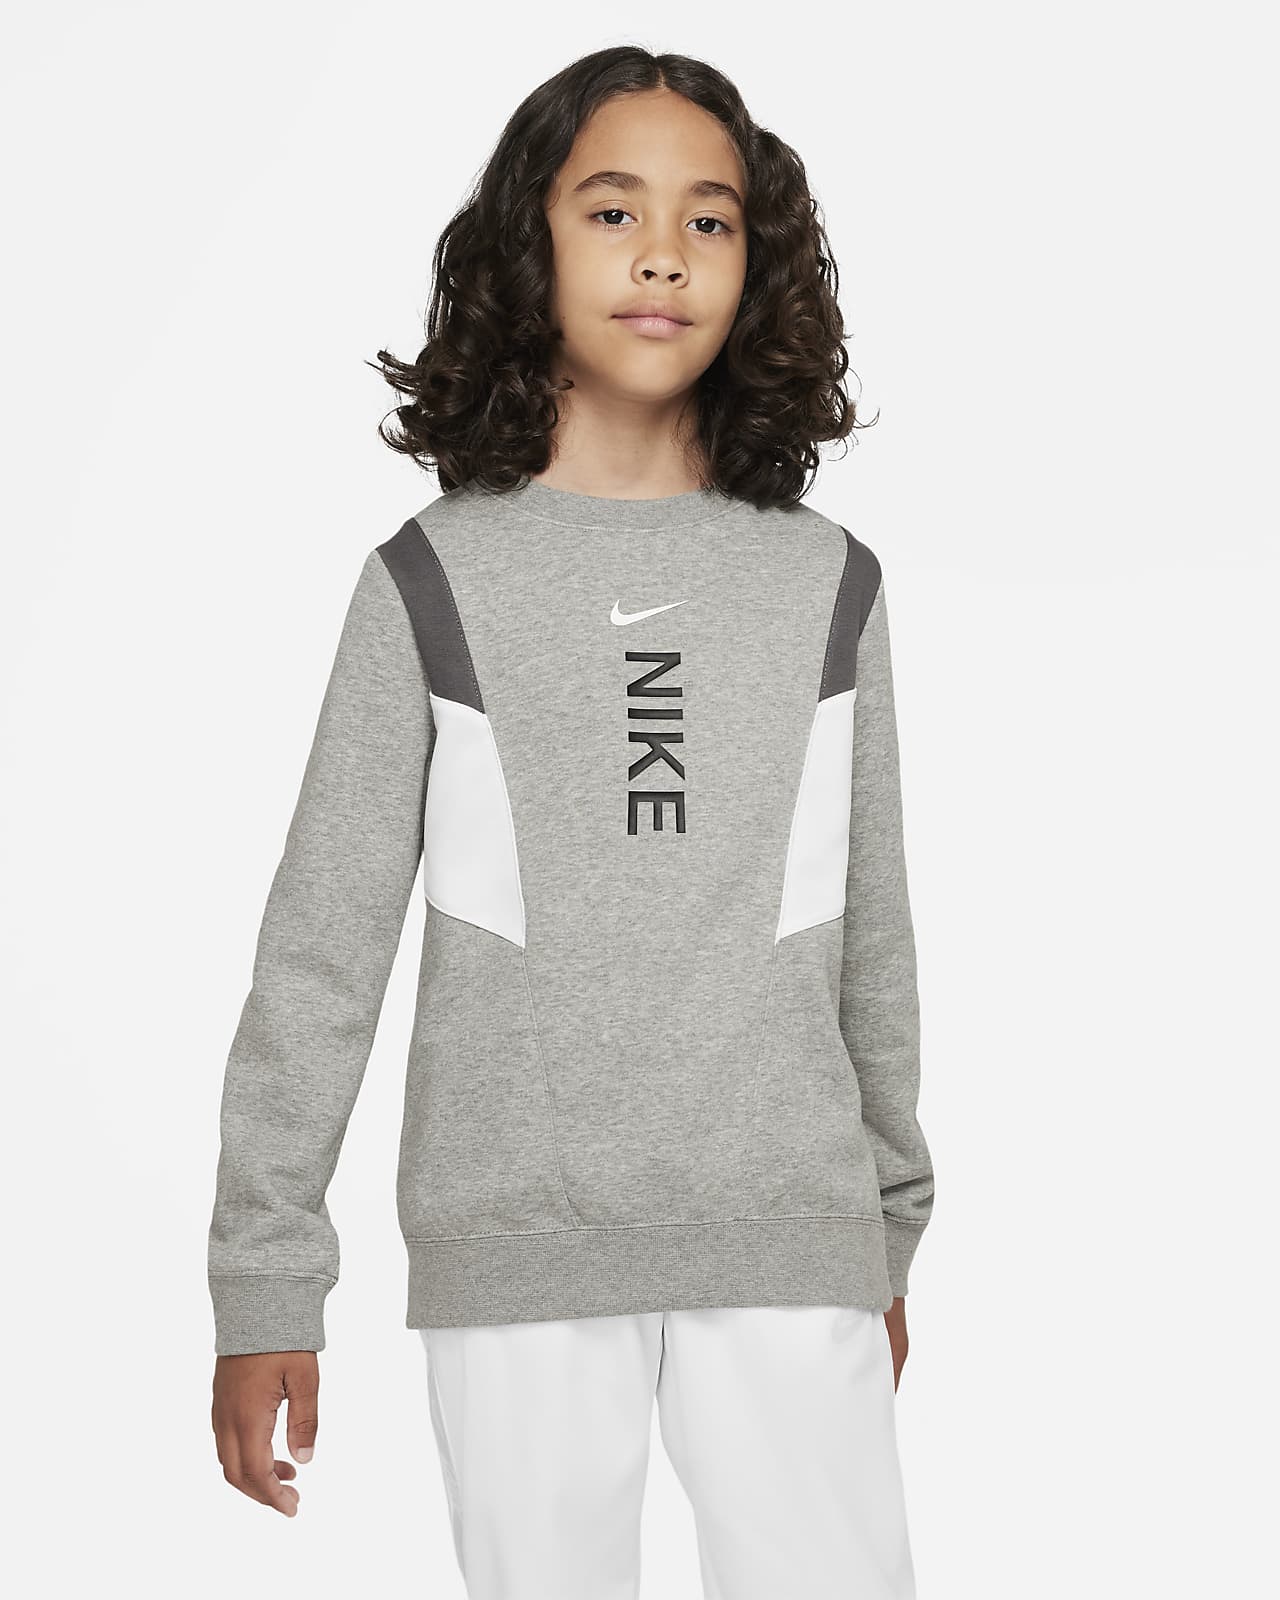 Fleecetröja Nike Sportswear Hybrid för ungdom (killar)